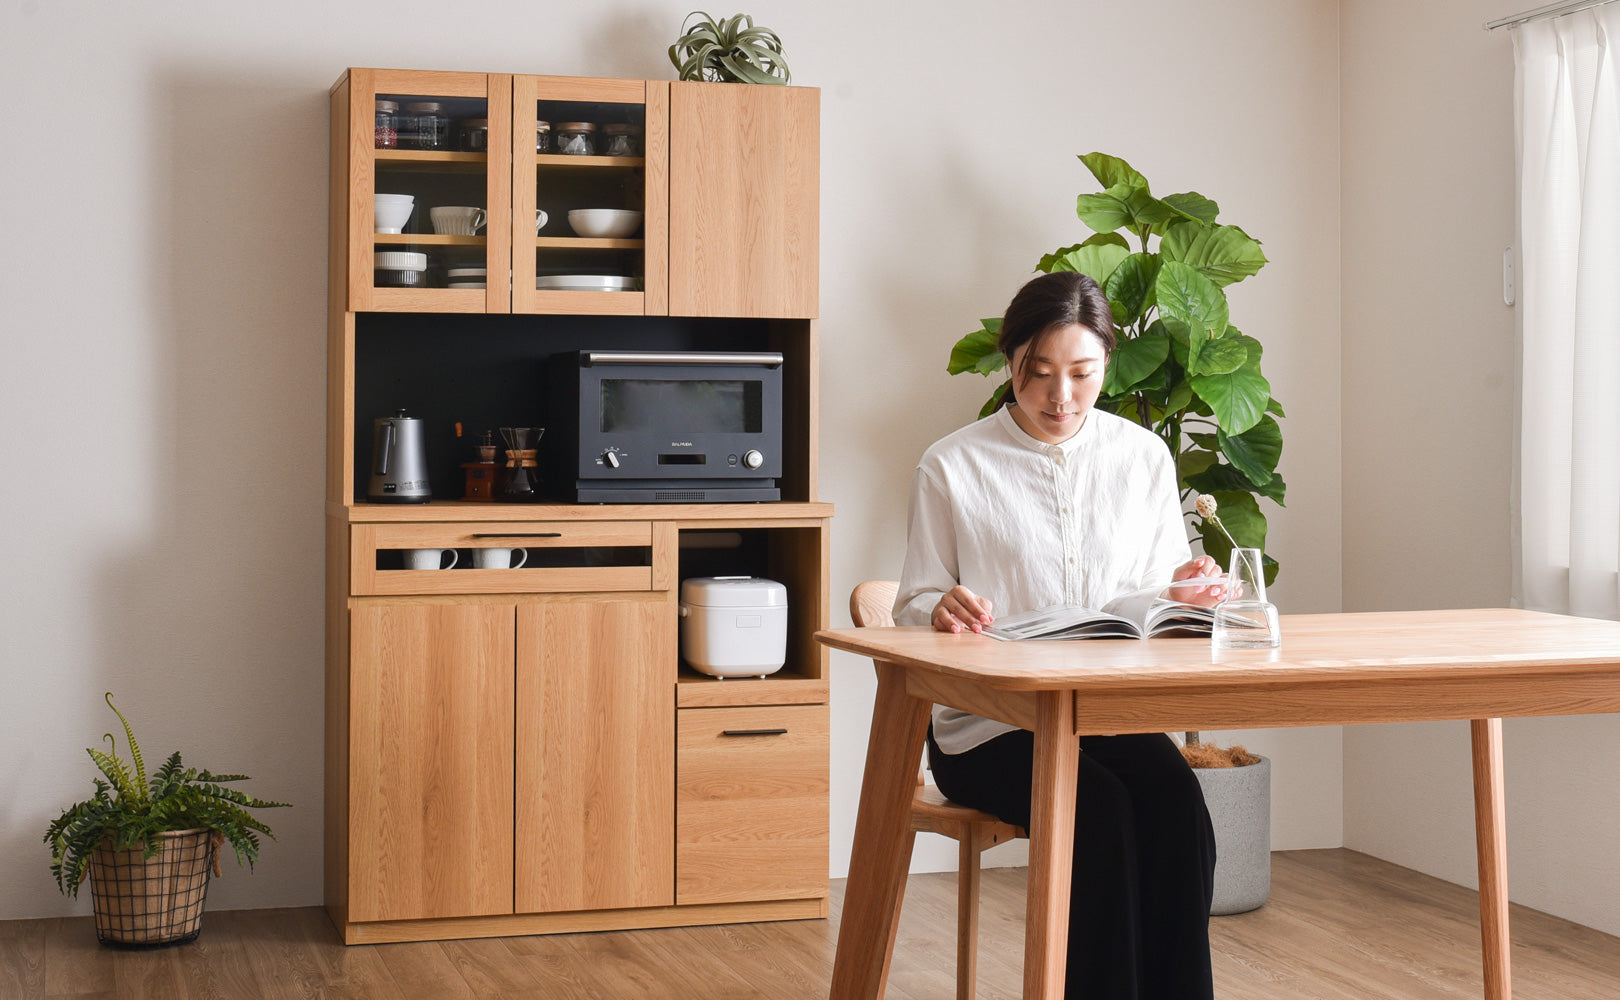 キッチンボード 幅105cm 日本製 キッチン収納 キッチンキャビネット 棚 食器棚 国産 完成品 VENTOTA alno-105b – FINE  KAGU 公式